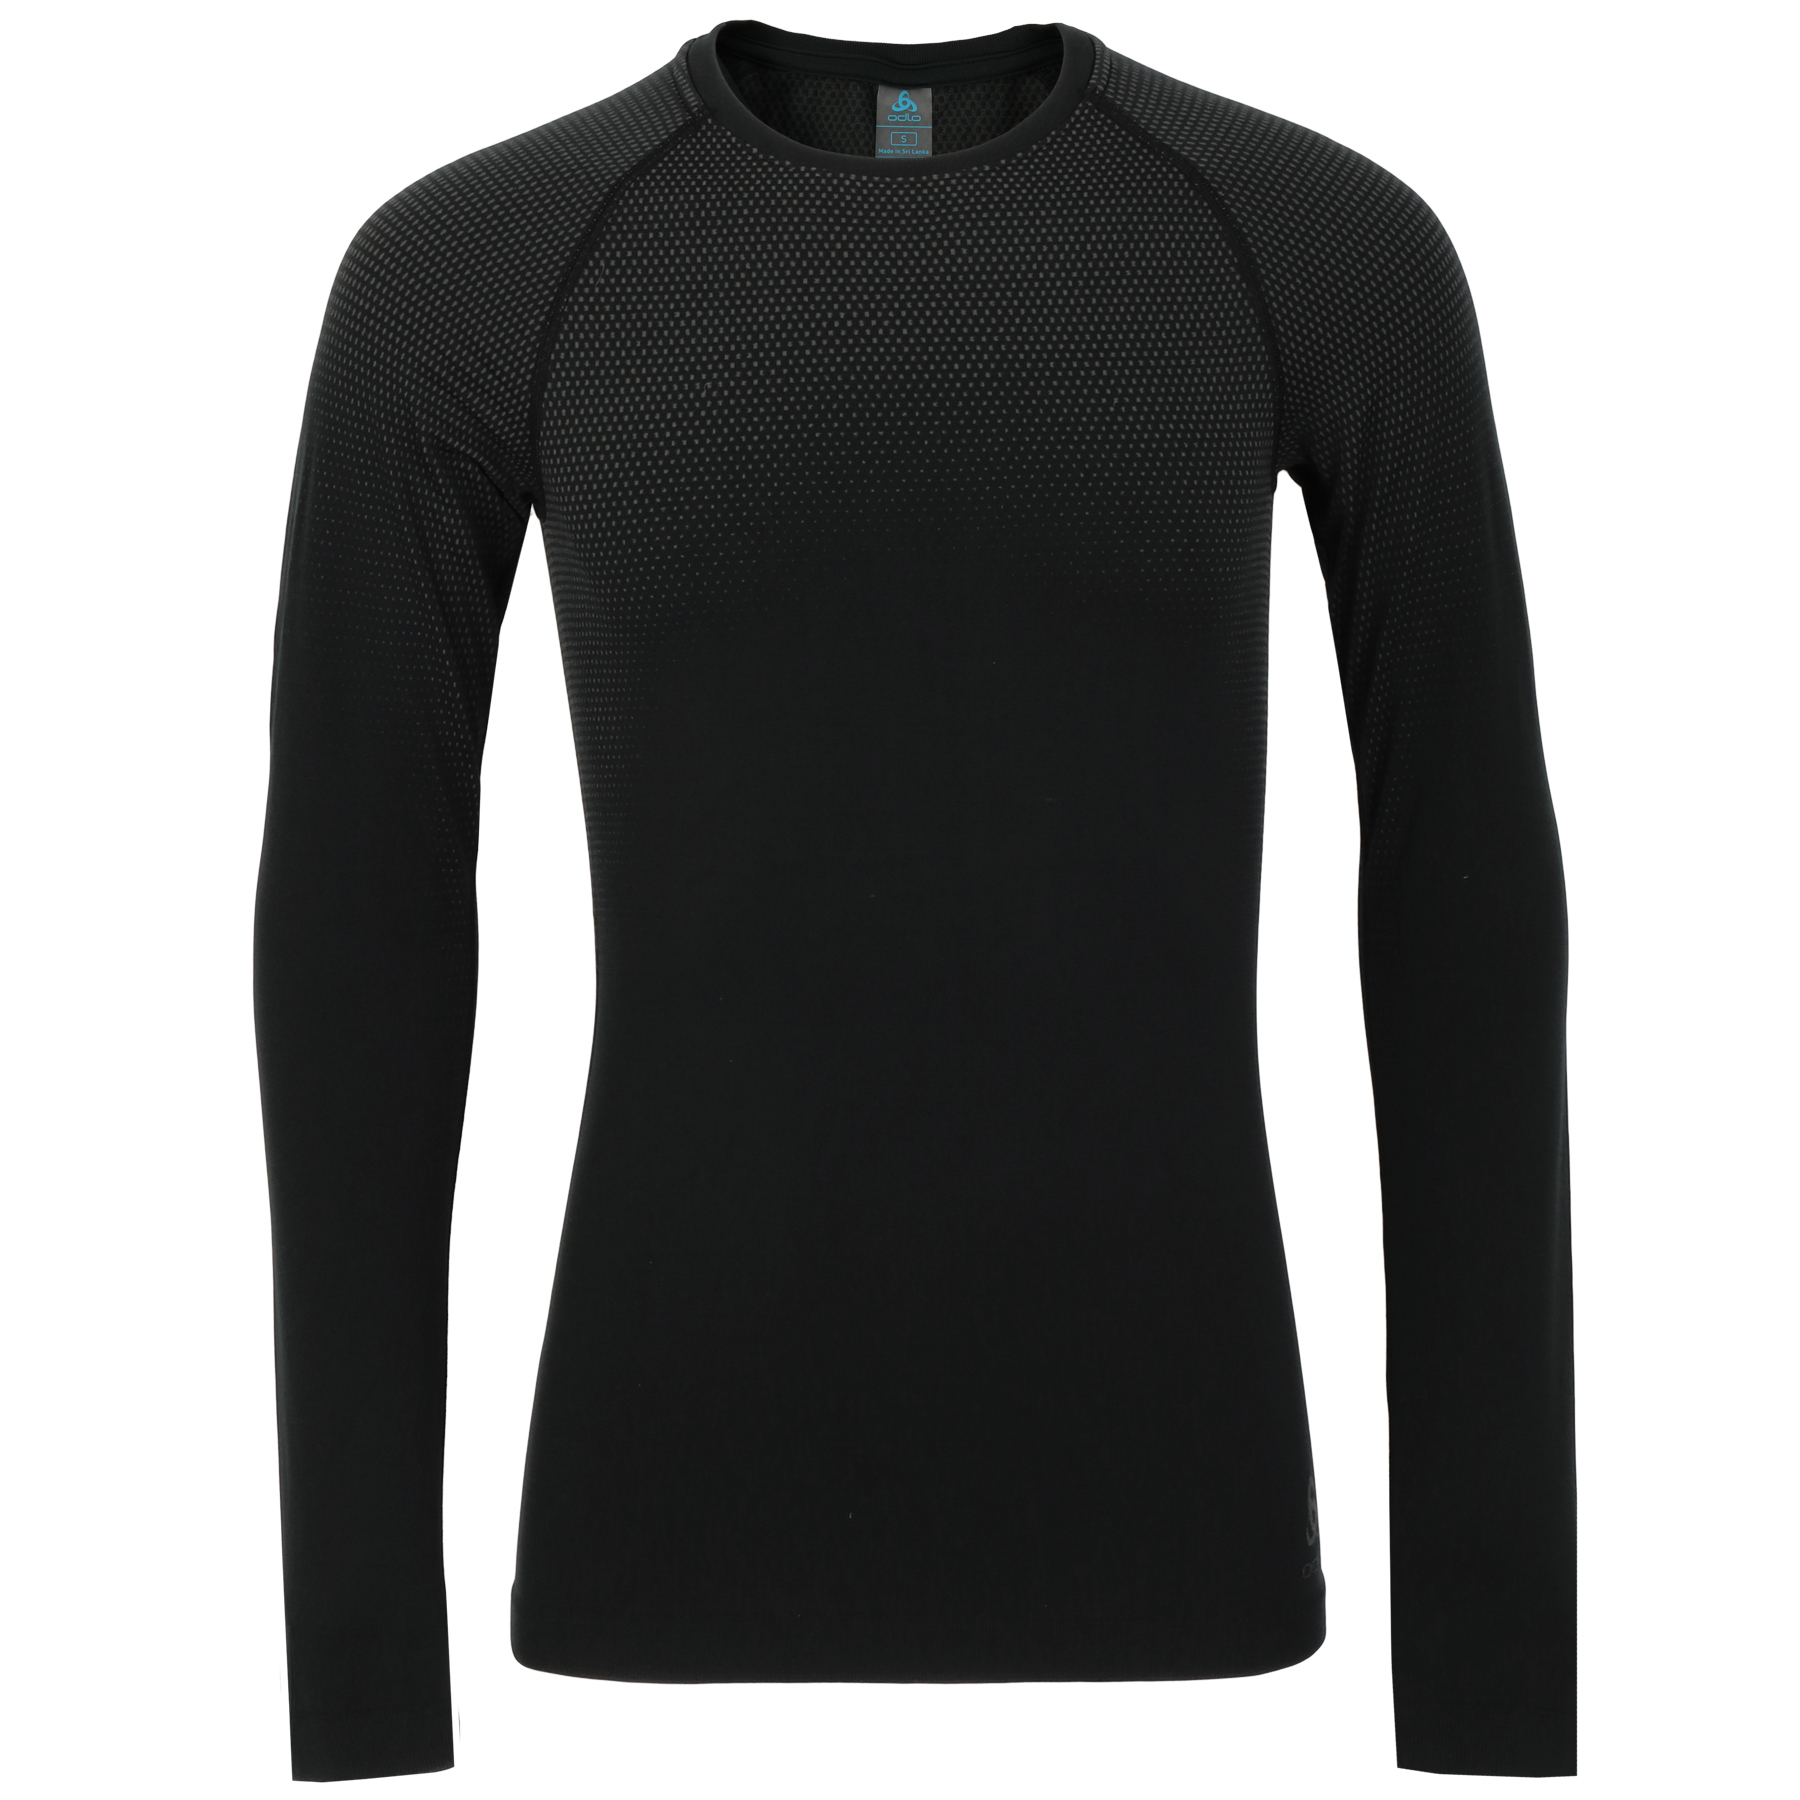 Productfoto van Odlo Performance Light Hemd met Lange Mouwen Heren - zwart